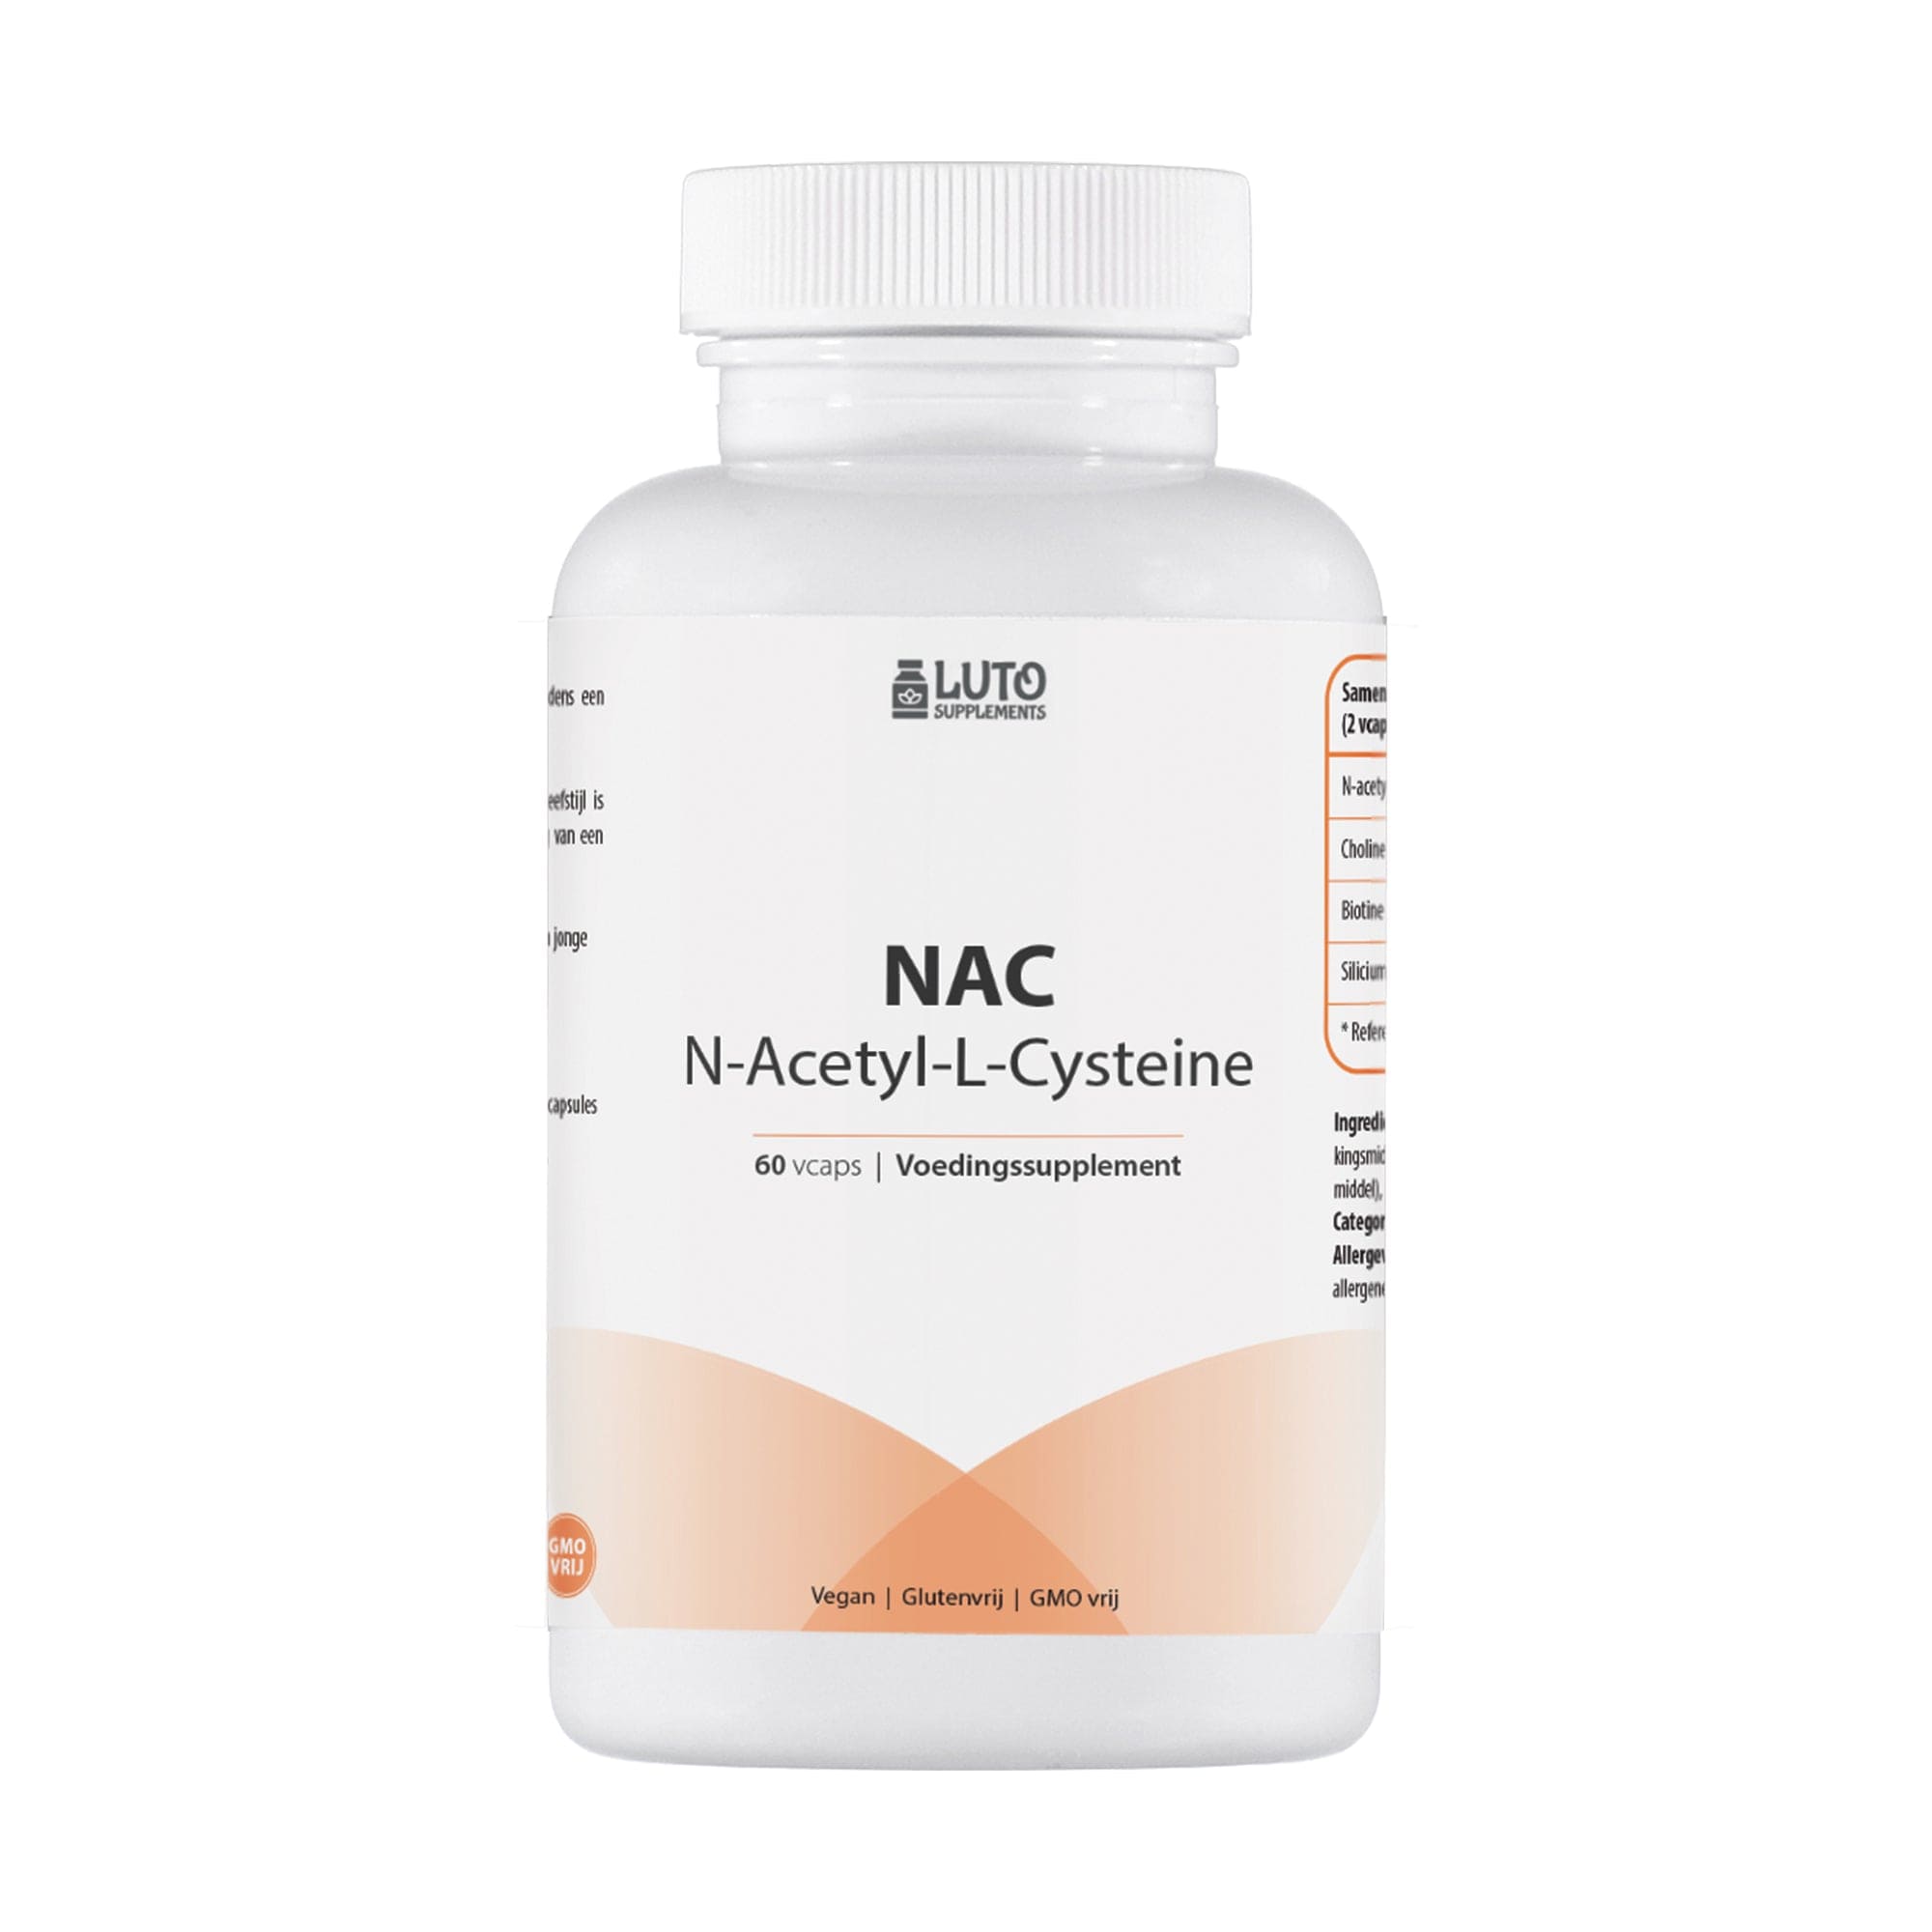 NAC N-Aceryl-L-Cysteine